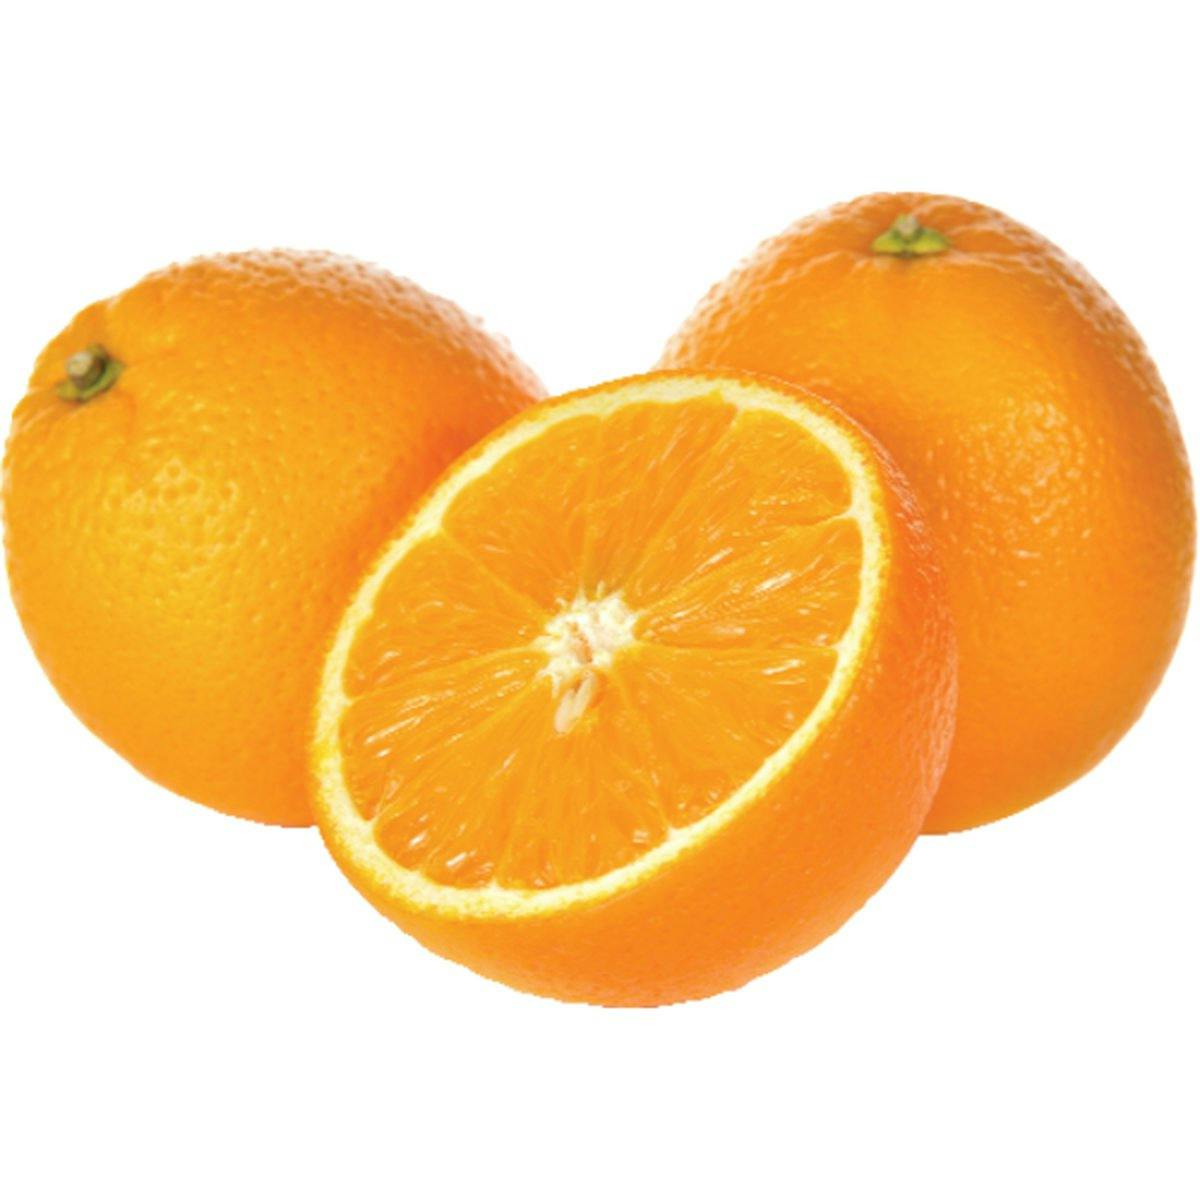 Juice from  orange